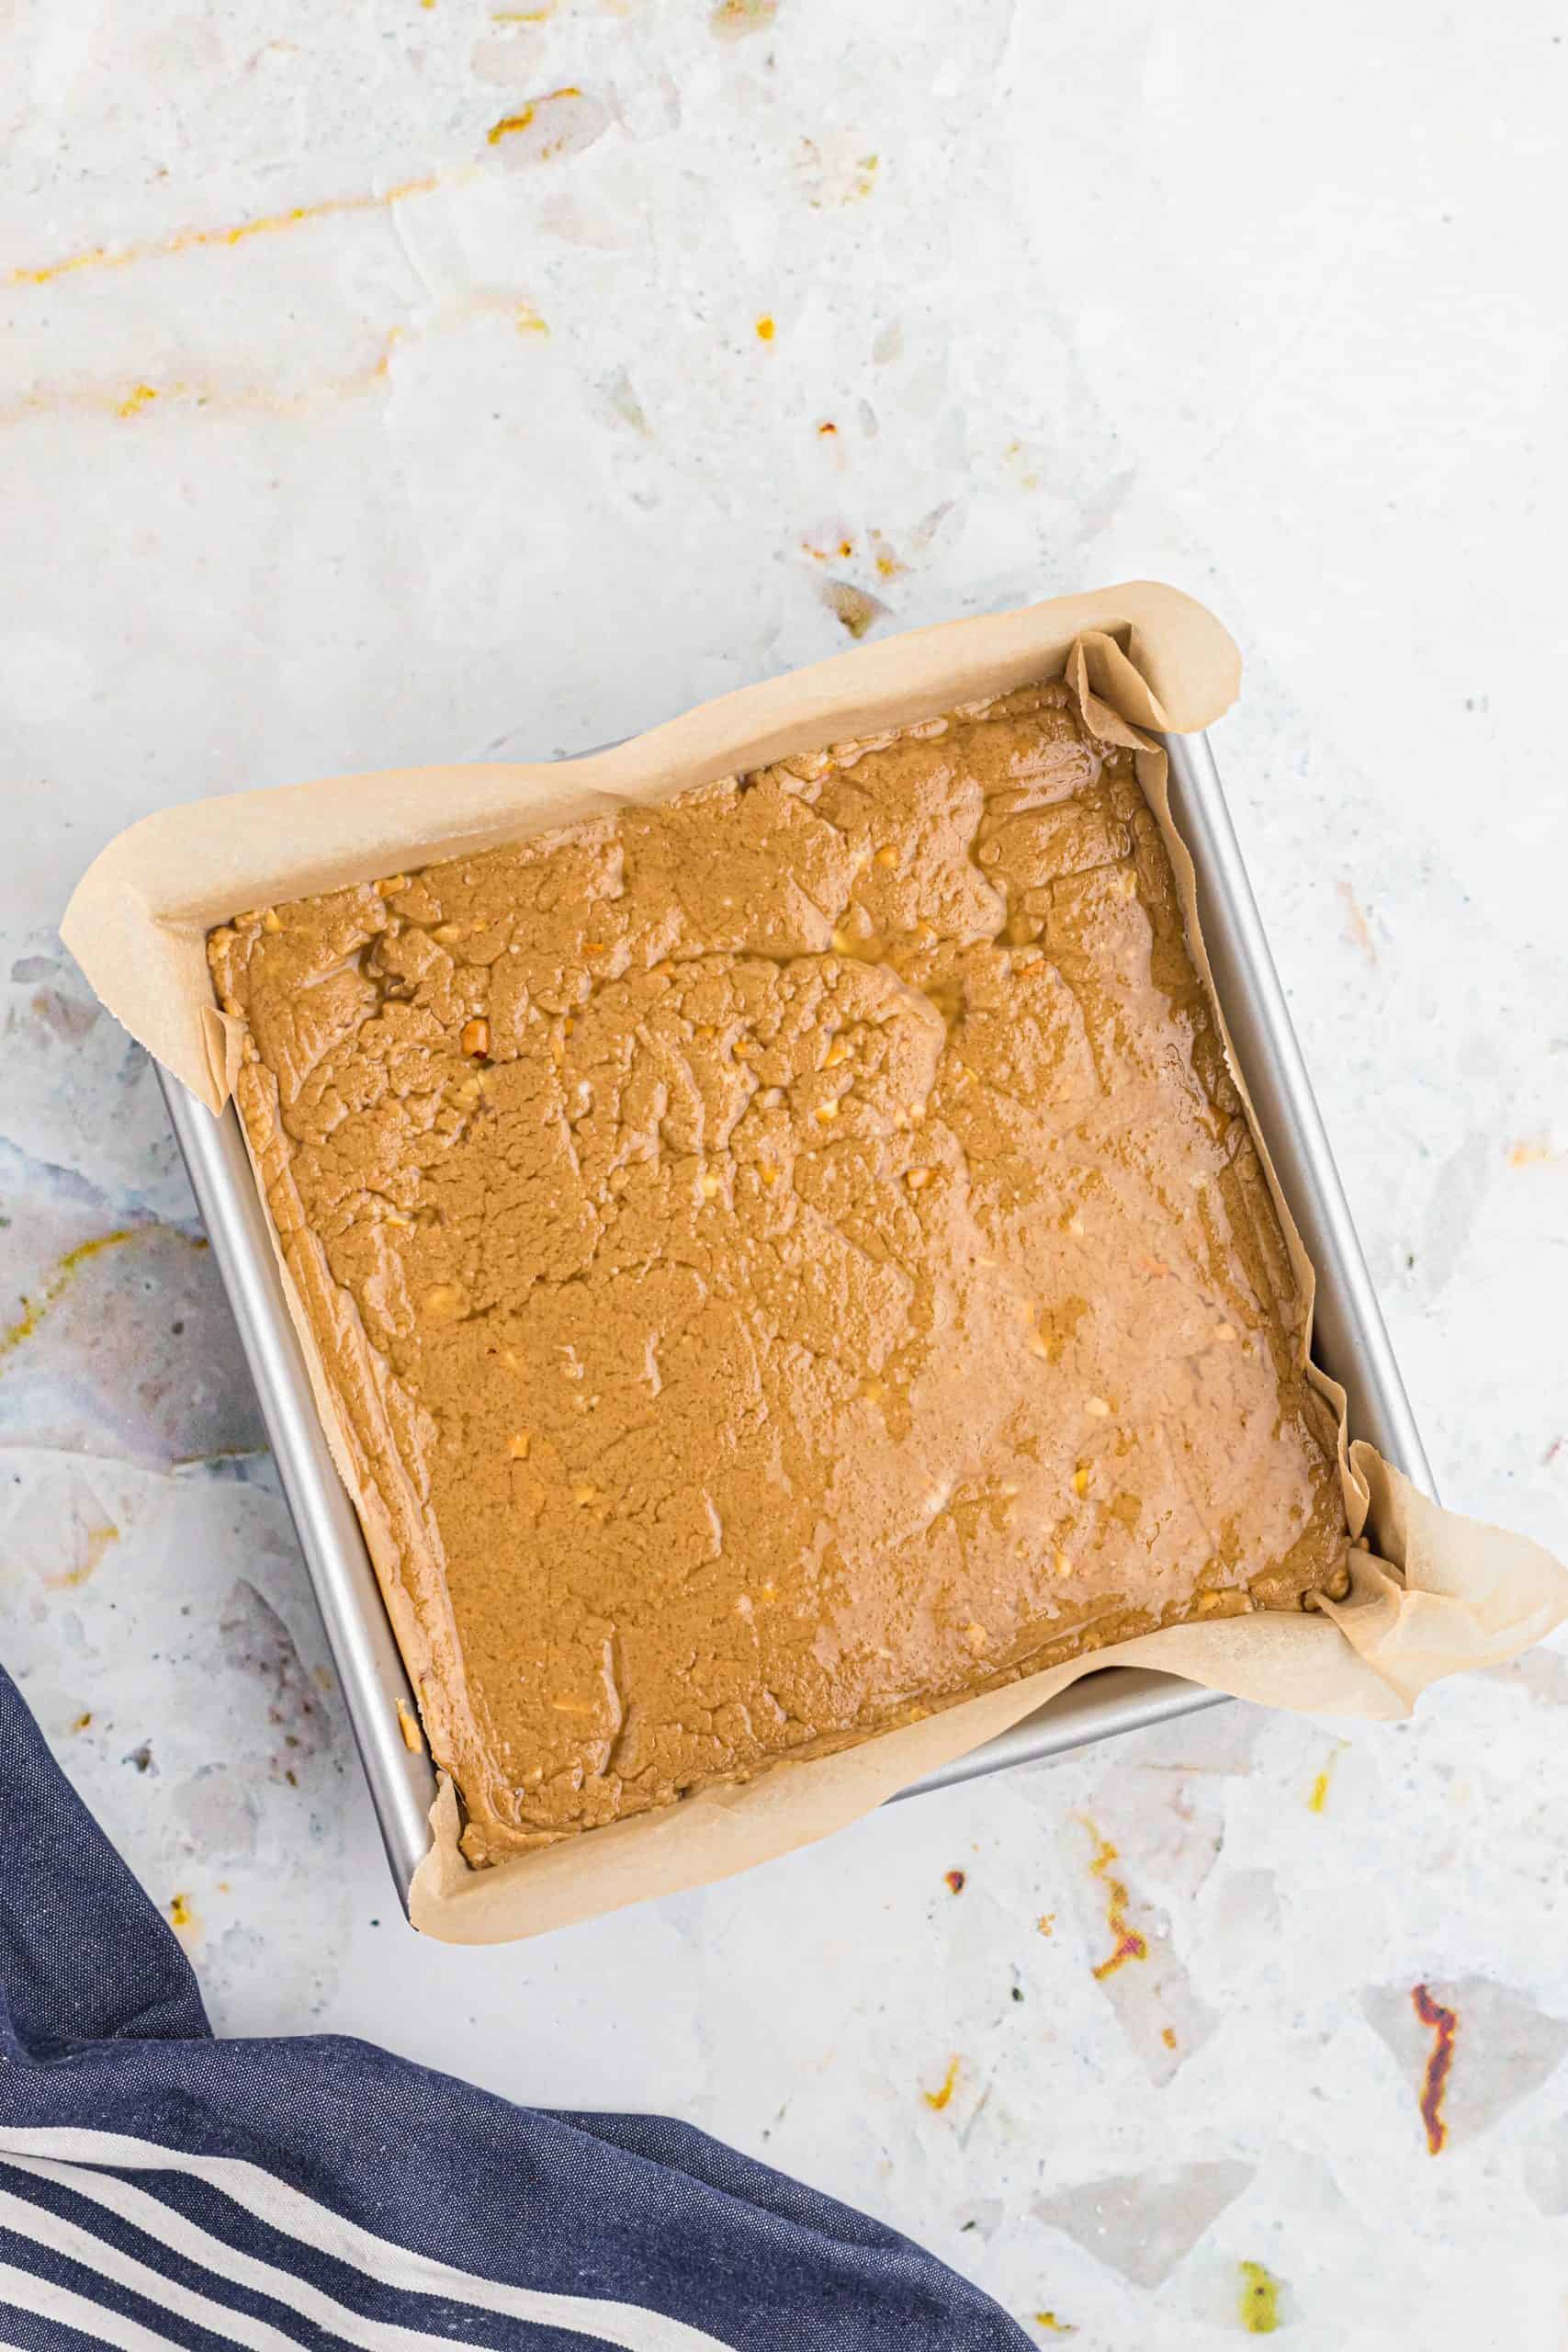 peanut butter fudge batter spread into a parchment paper line baking pan.